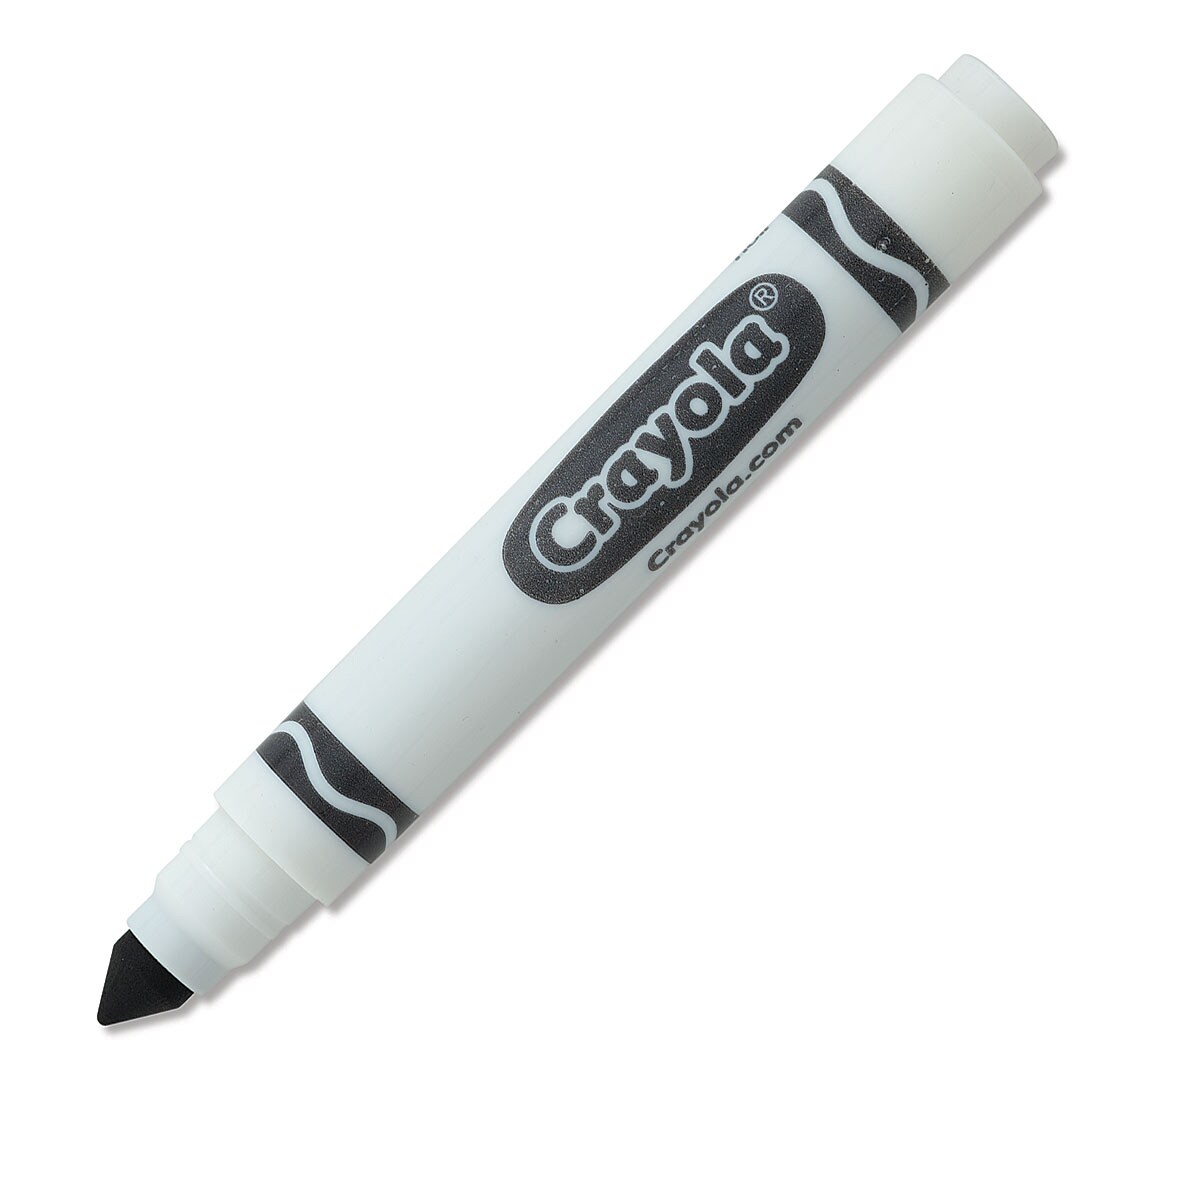 crayola logo black and white